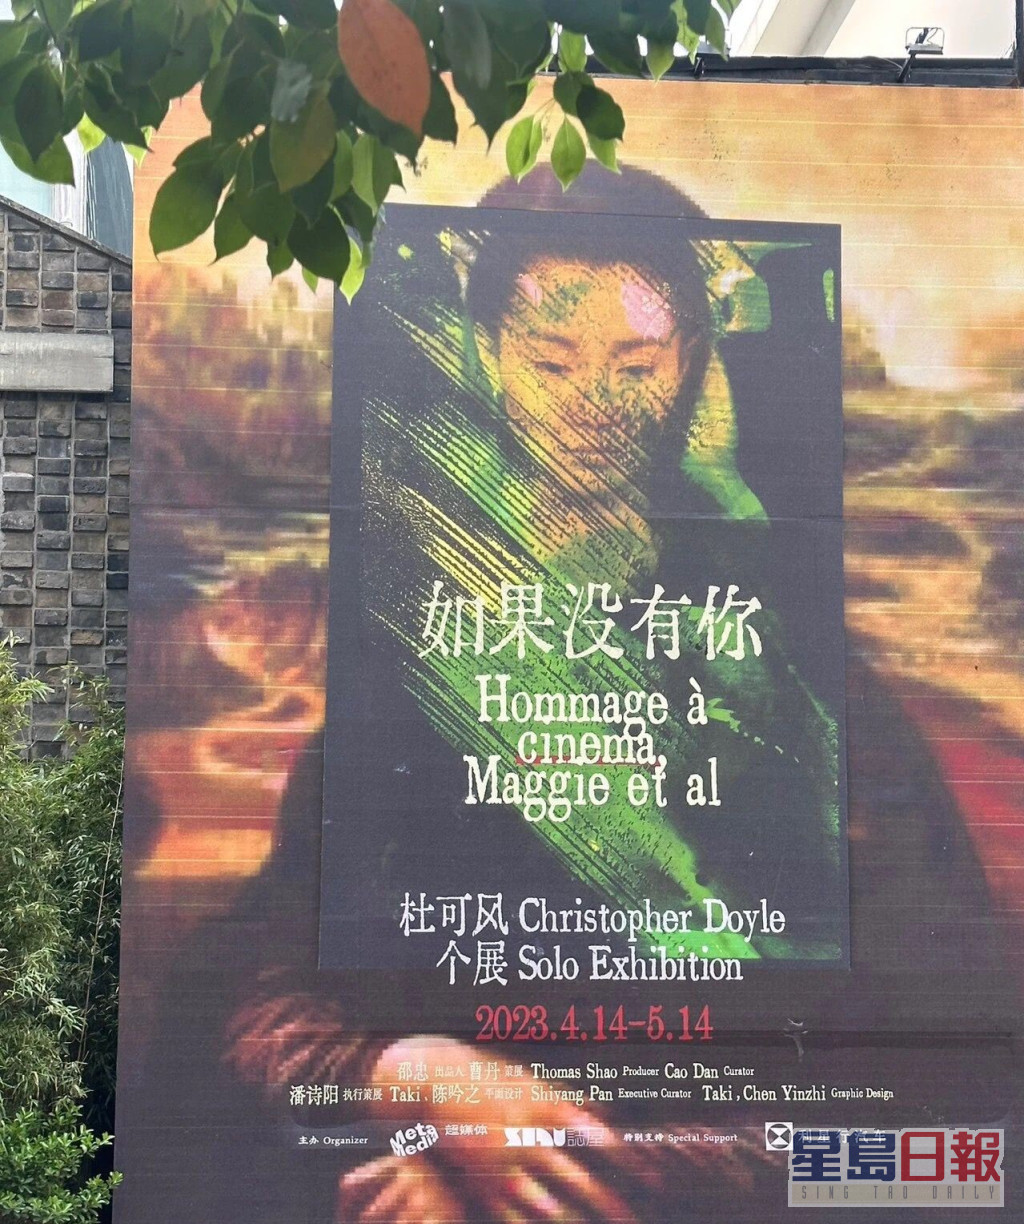 杜可風自上月14日至本月15日在上海舉行個人展覽《如果沒有你》。